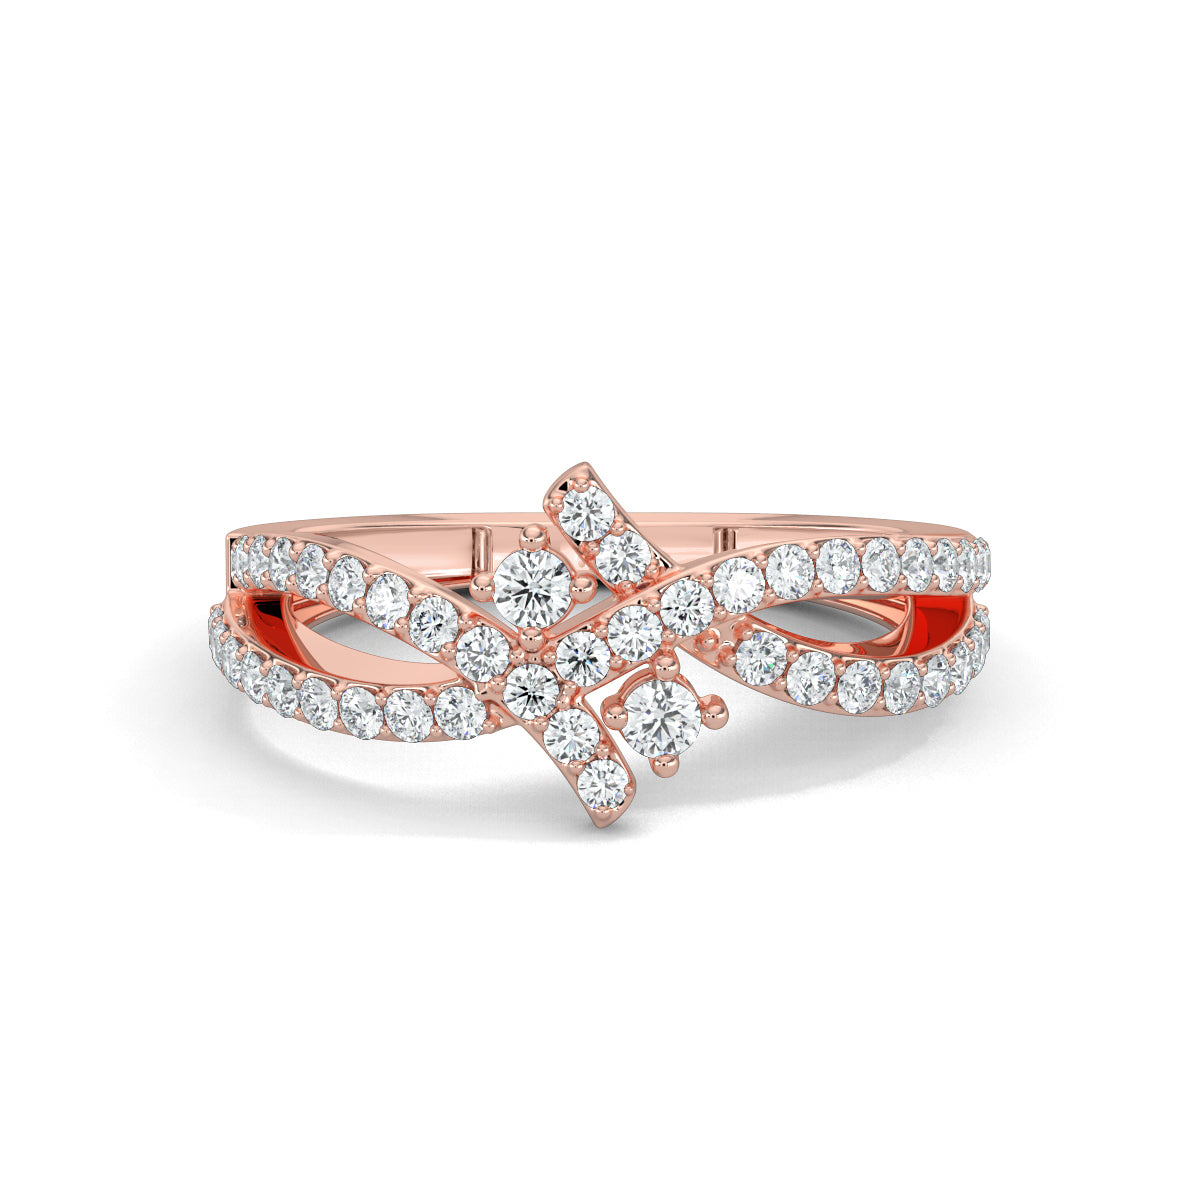 Rose Gold, Diamond Ring, Nebula twist diamond ring, celestial diamond ring, split shank band, natural diamonds, lab-grown diamonds, contemporary jewelry